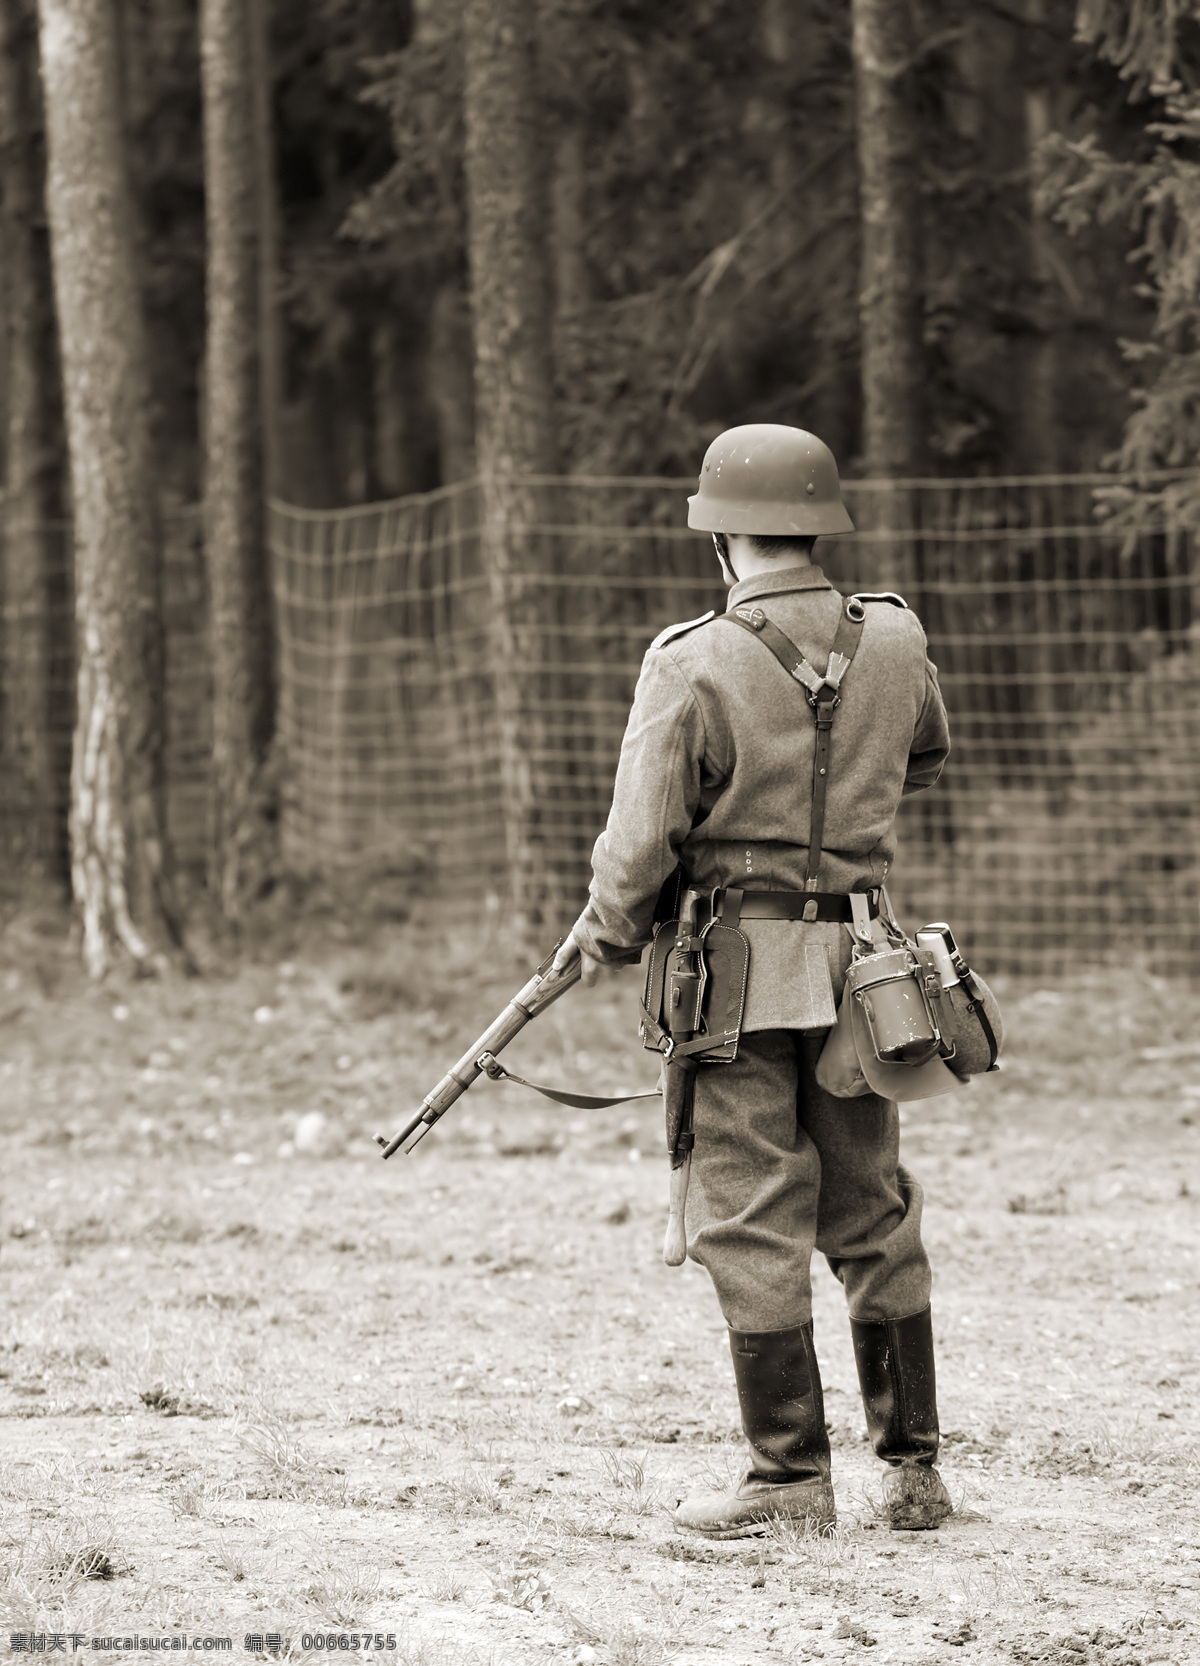 二战德军士兵 军事 二战 德军 士兵 二战德军 警戒 持枪 纳粹德国 高清 职业人物 人物图库